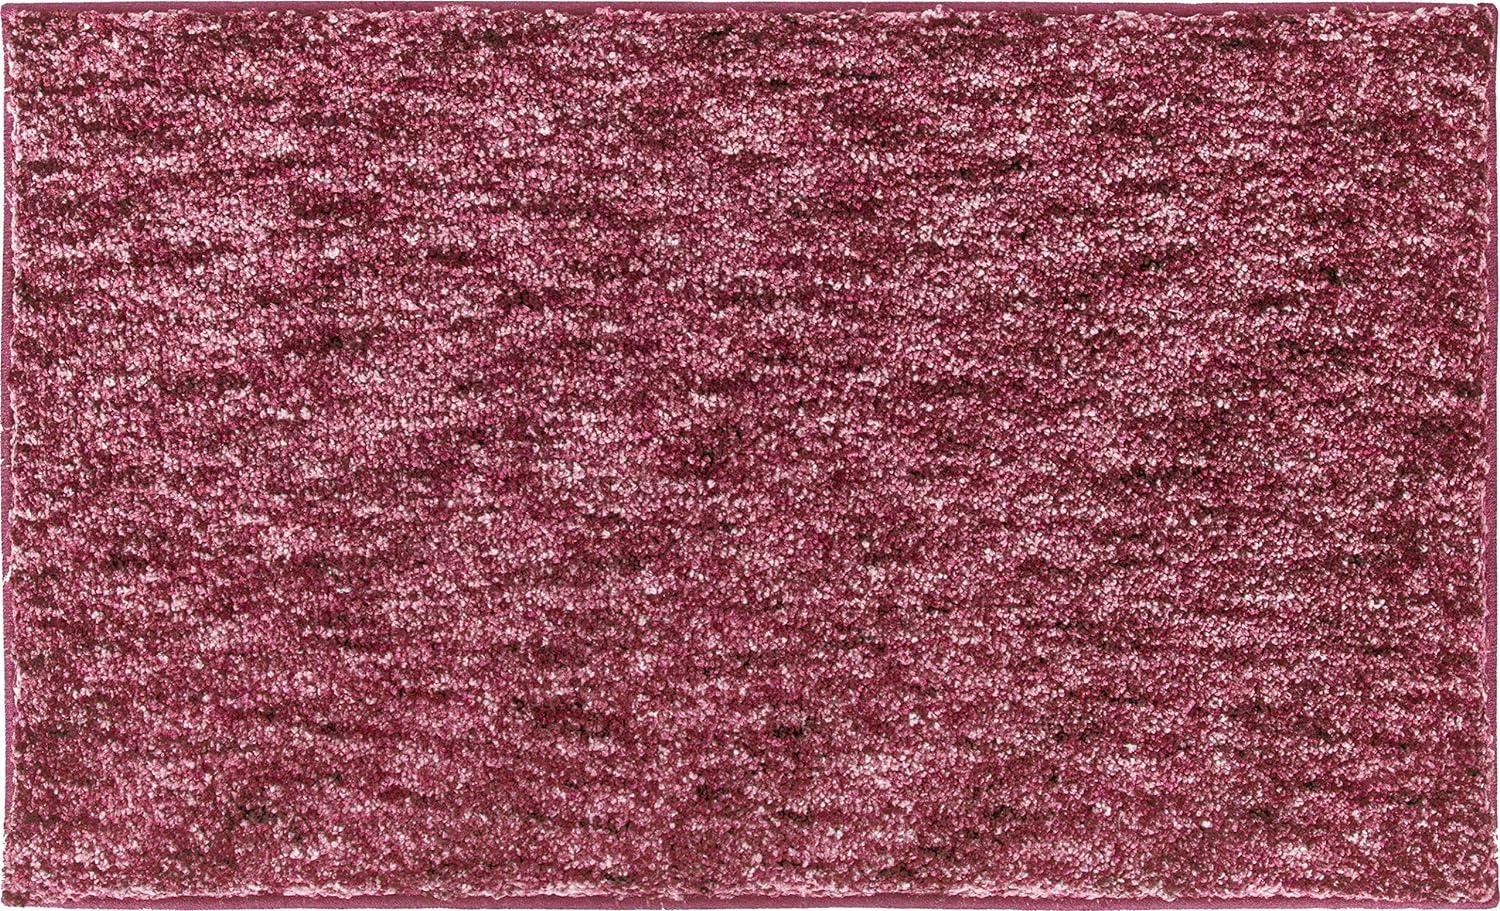 Grund Mirage Badteppich, Polyester, Rubinrot, 60 x 100 cm Bild 1